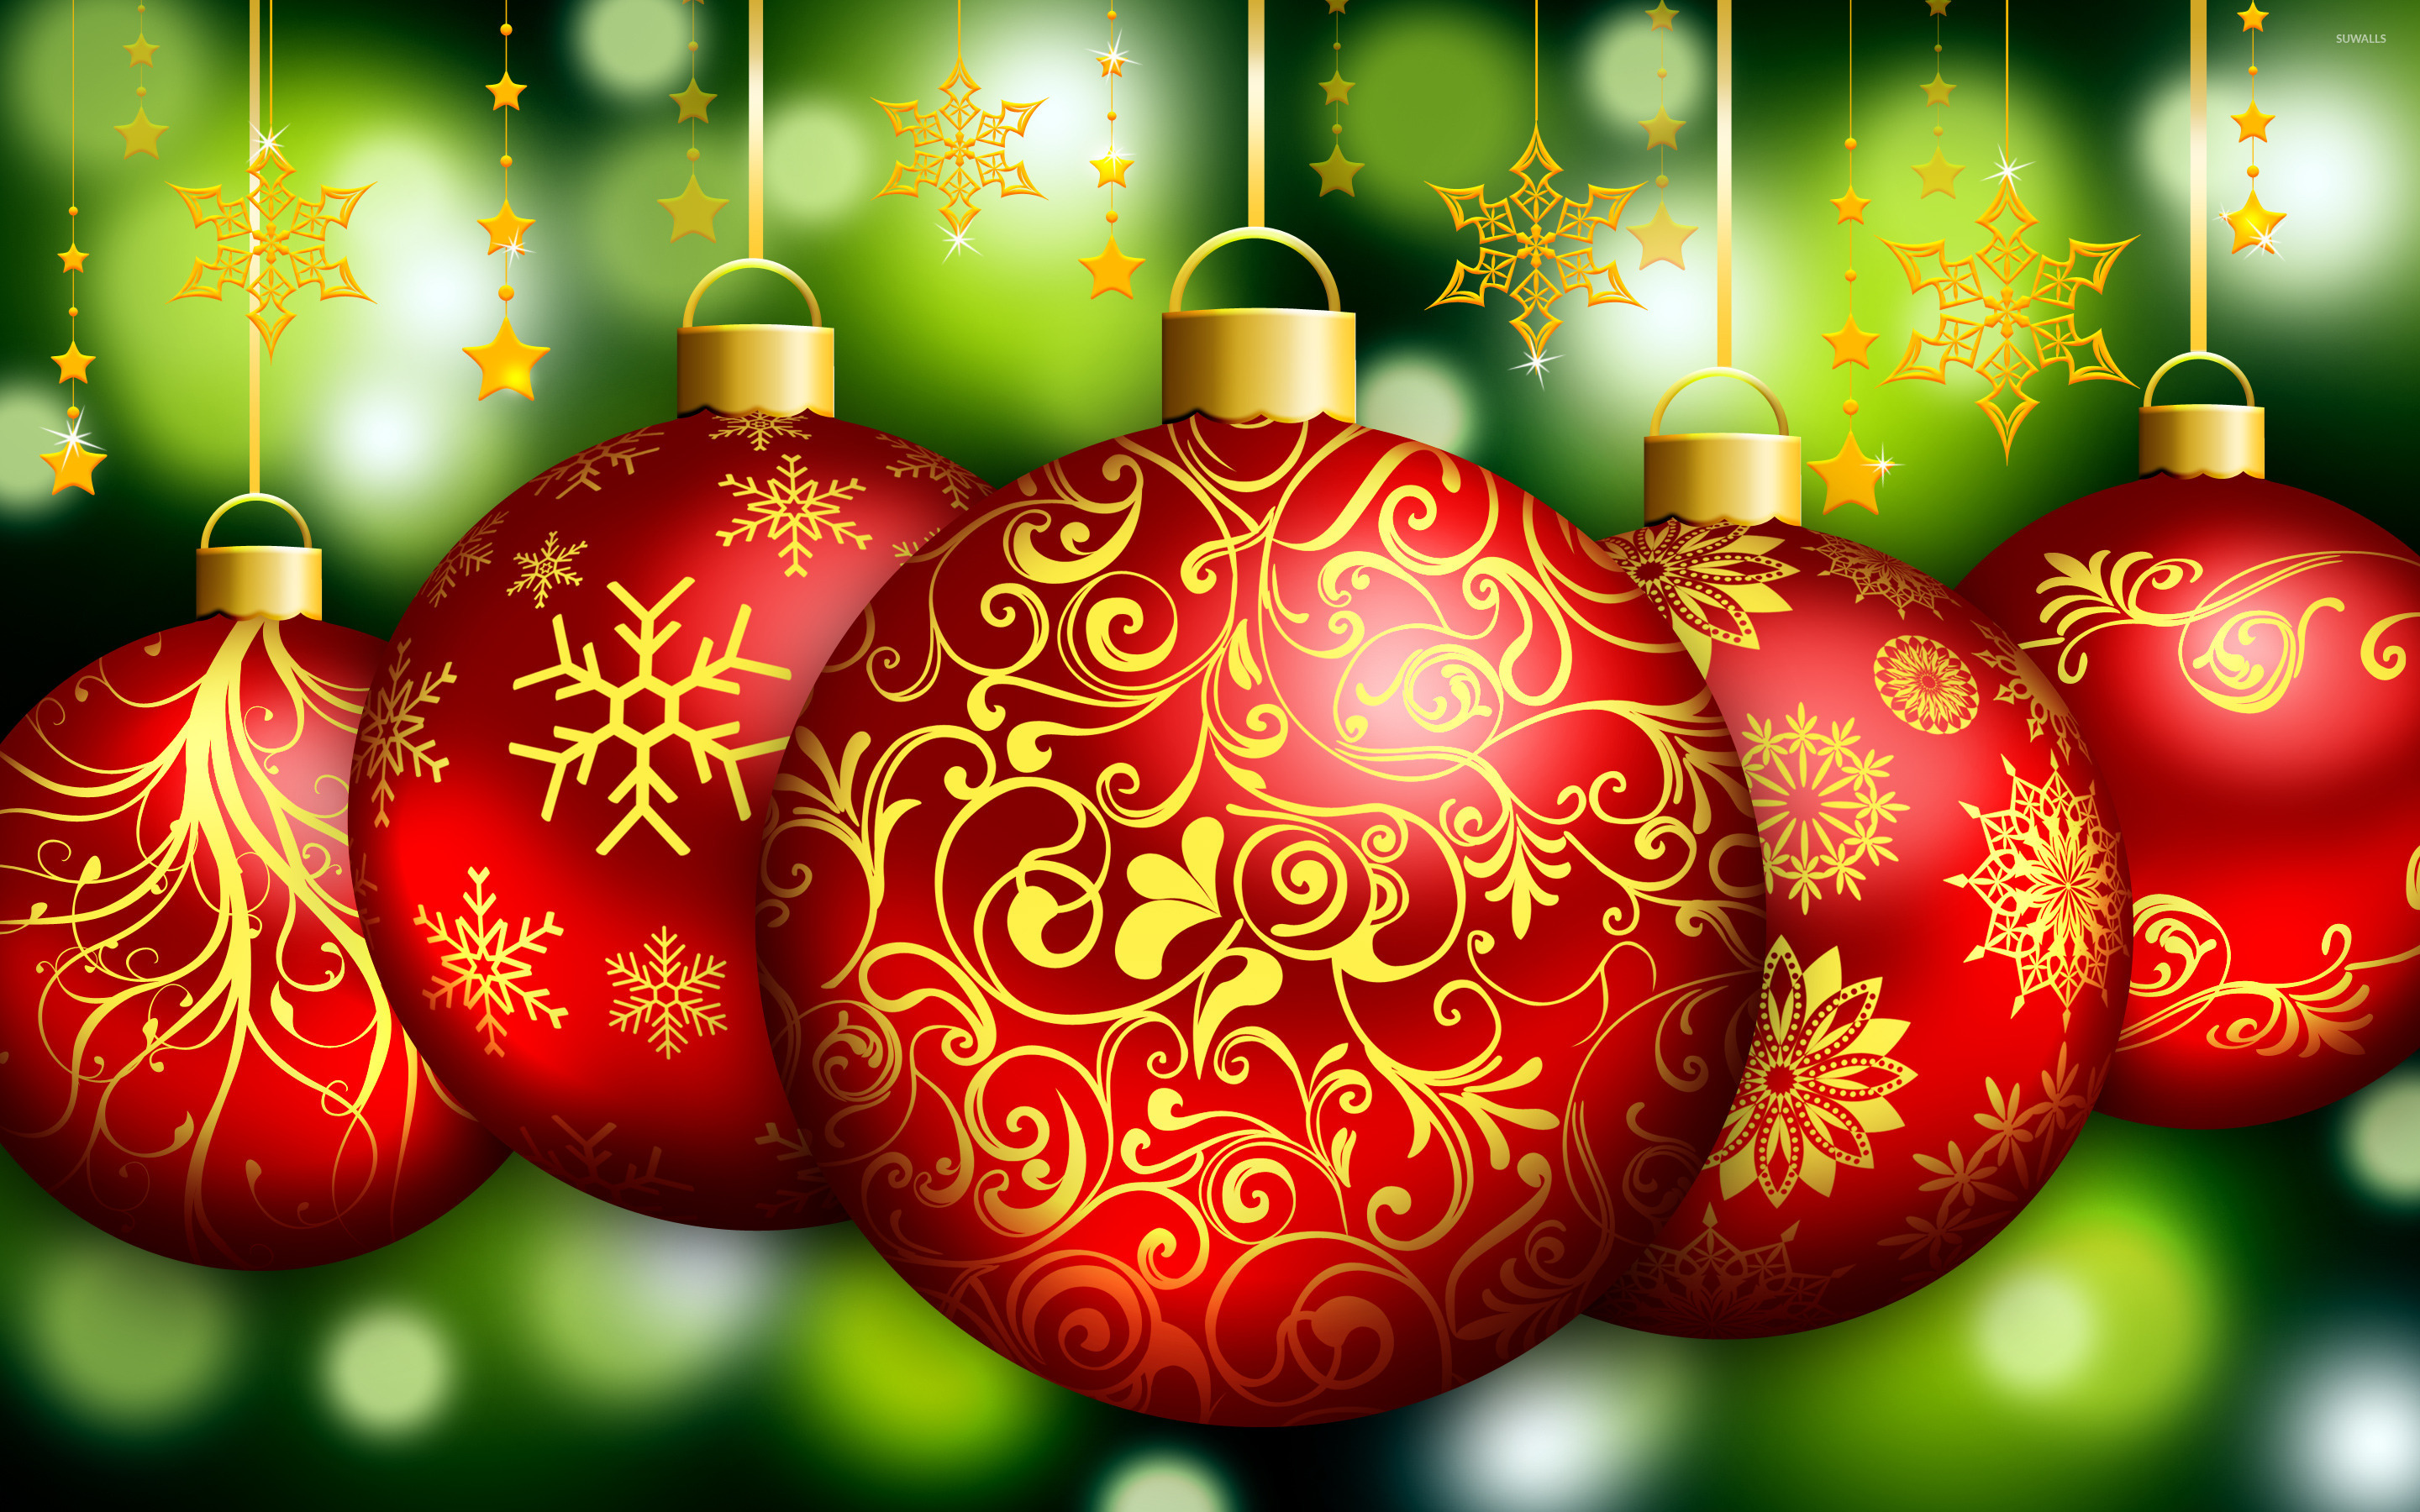 christmas ornament wallpaper,christmas ornament,christmas decoration,ornament,holiday ornament,christmas